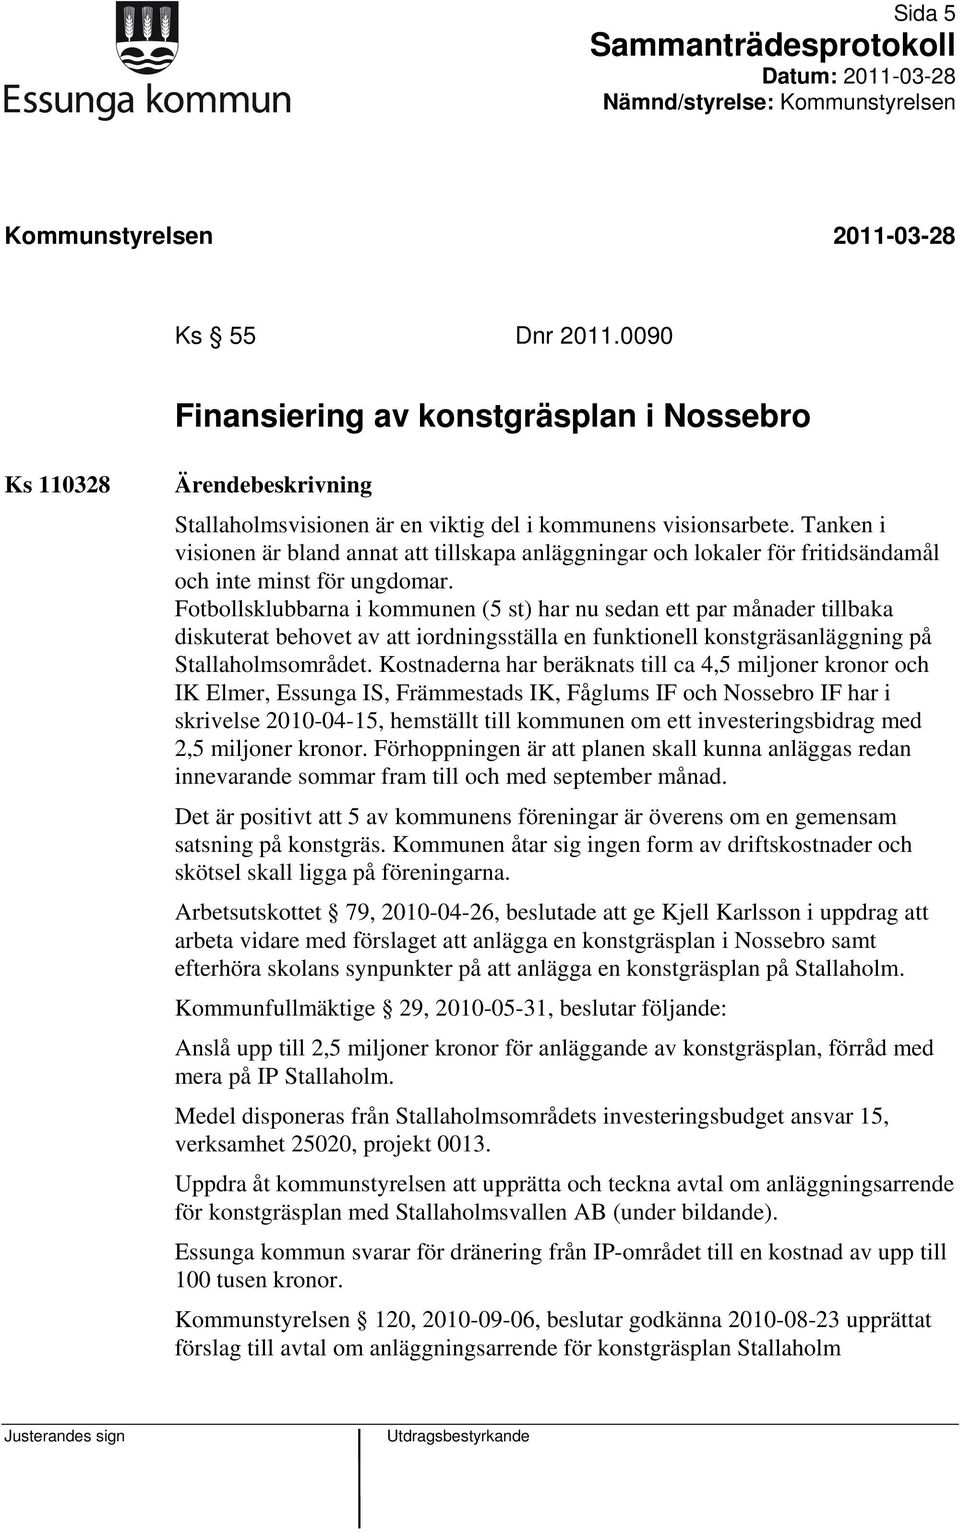 Fotbollsklubbarna i kommunen (5 st) har nu sedan ett par månader tillbaka diskuterat behovet av att iordningsställa en funktionell konstgräsanläggning på Stallaholmsområdet.